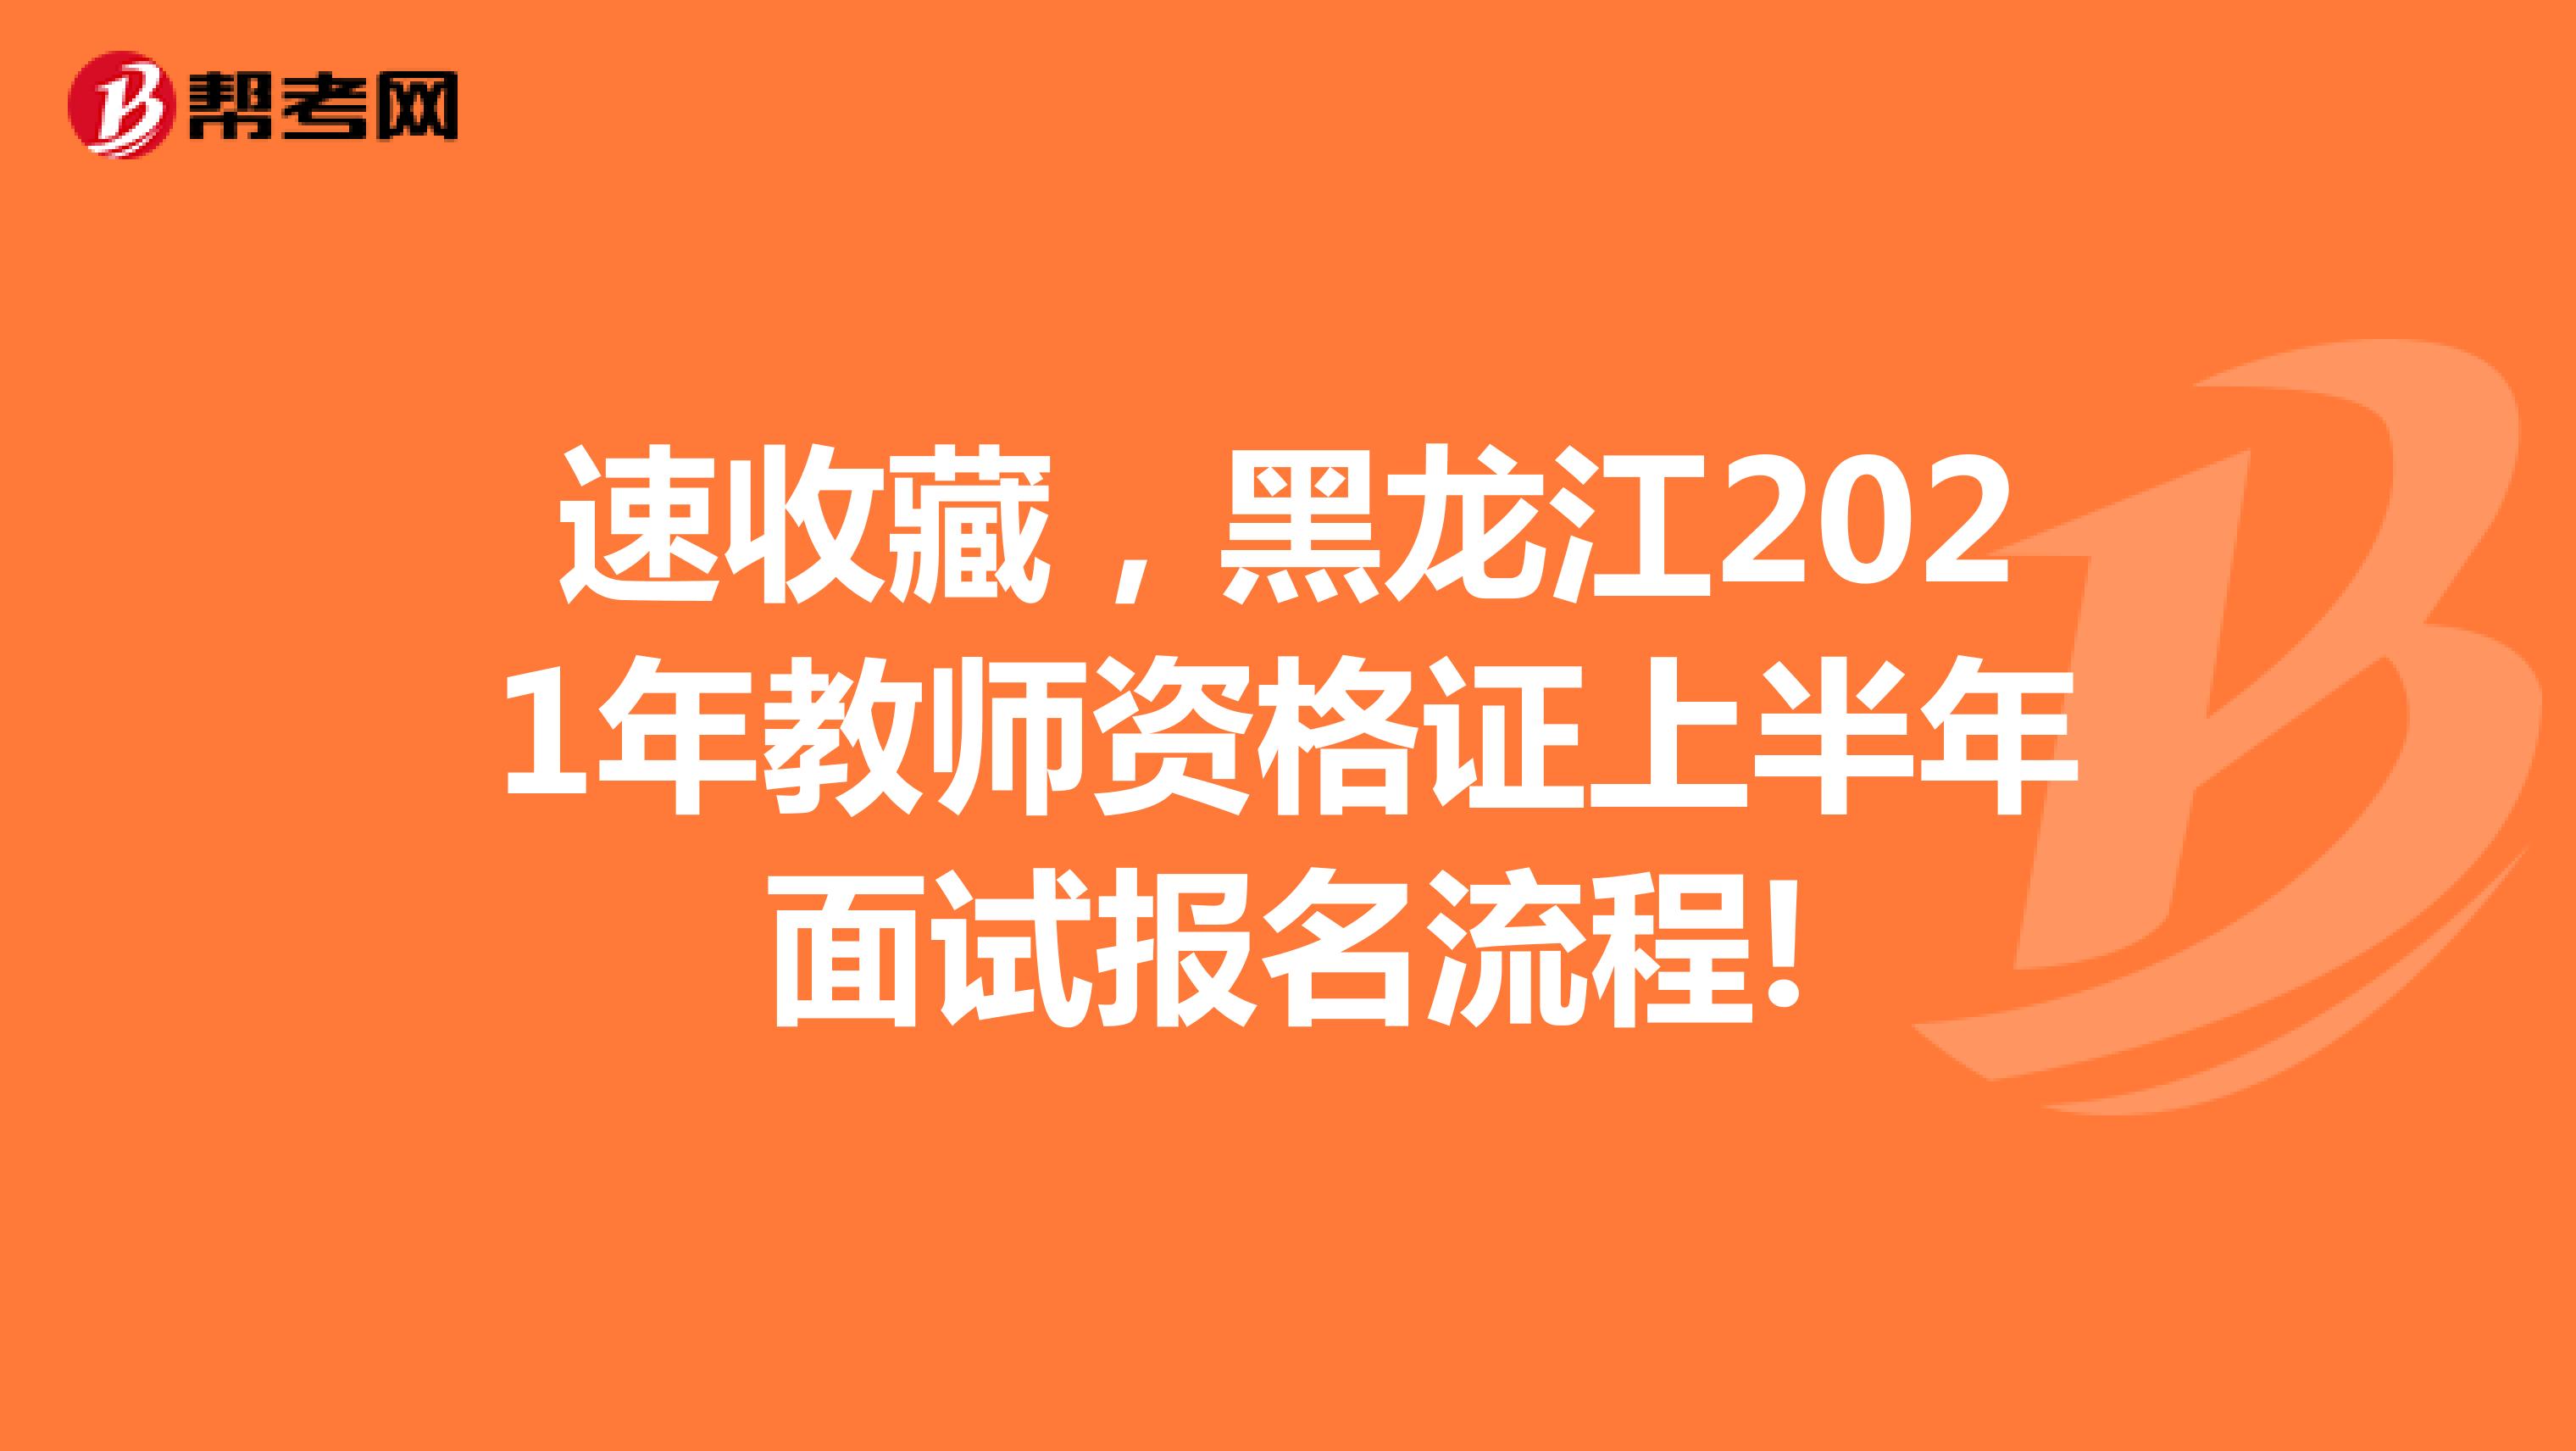 速收藏，黑龙江2021年教师资格证上半年面试报名流程!